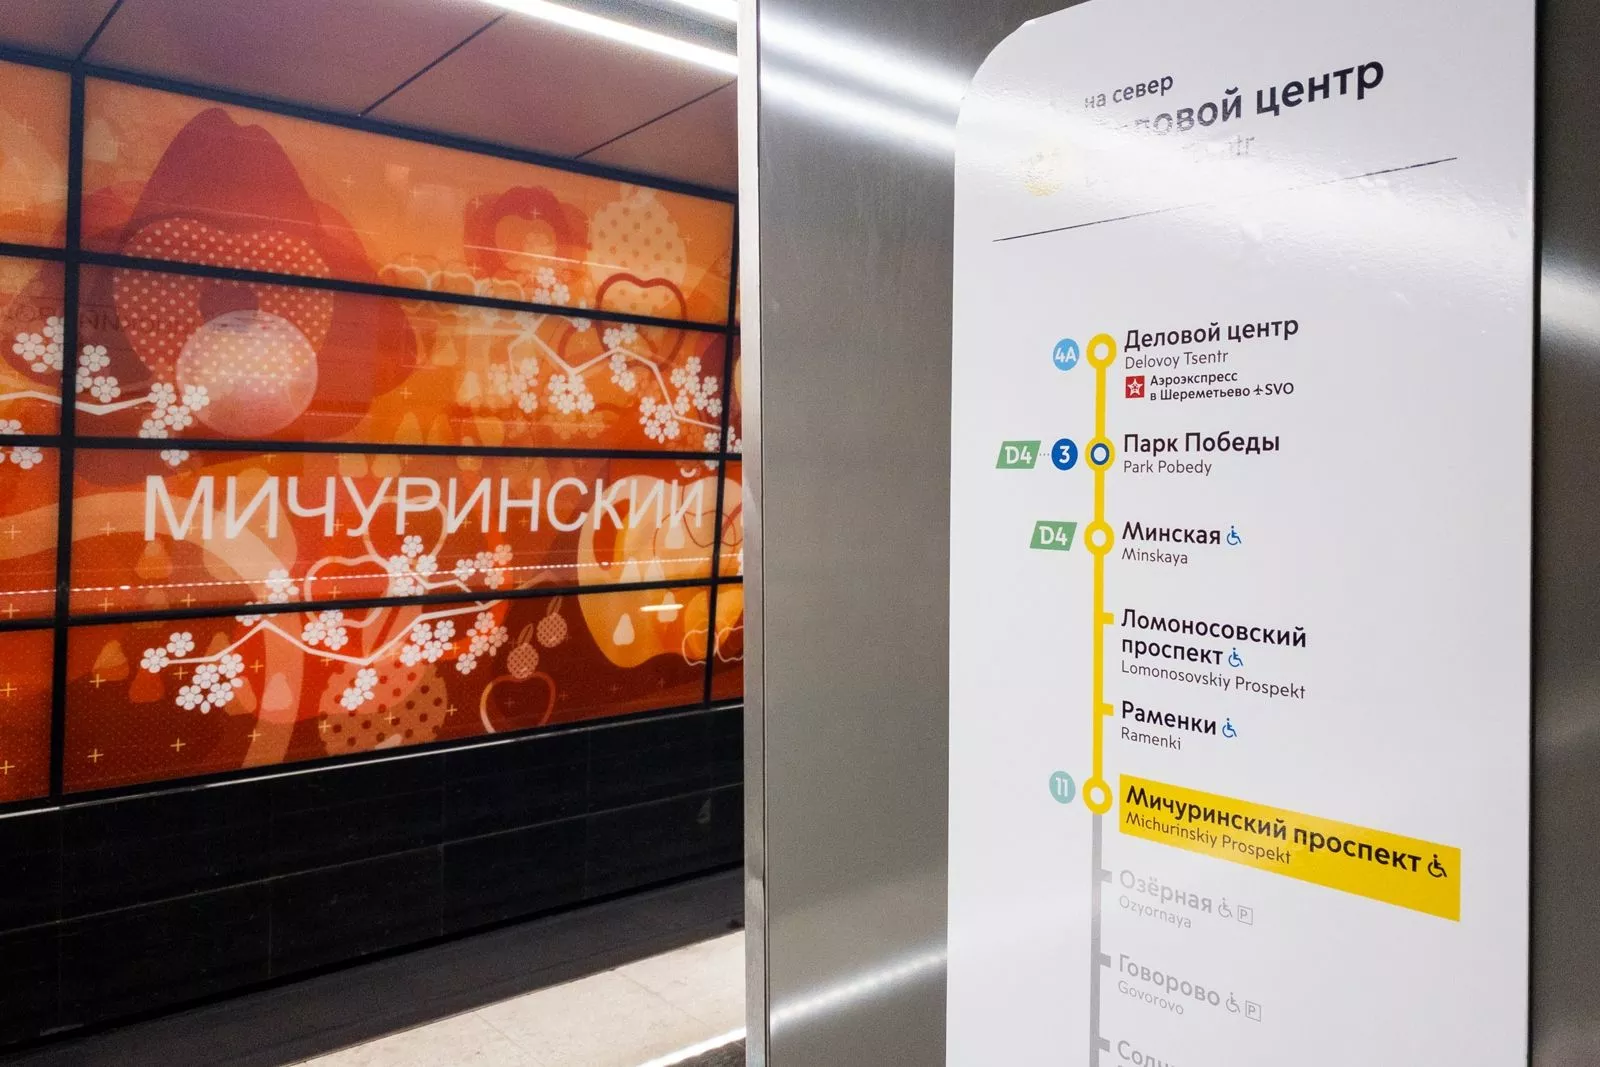 Сегодня метро в Москве не работает - узнайте почему!